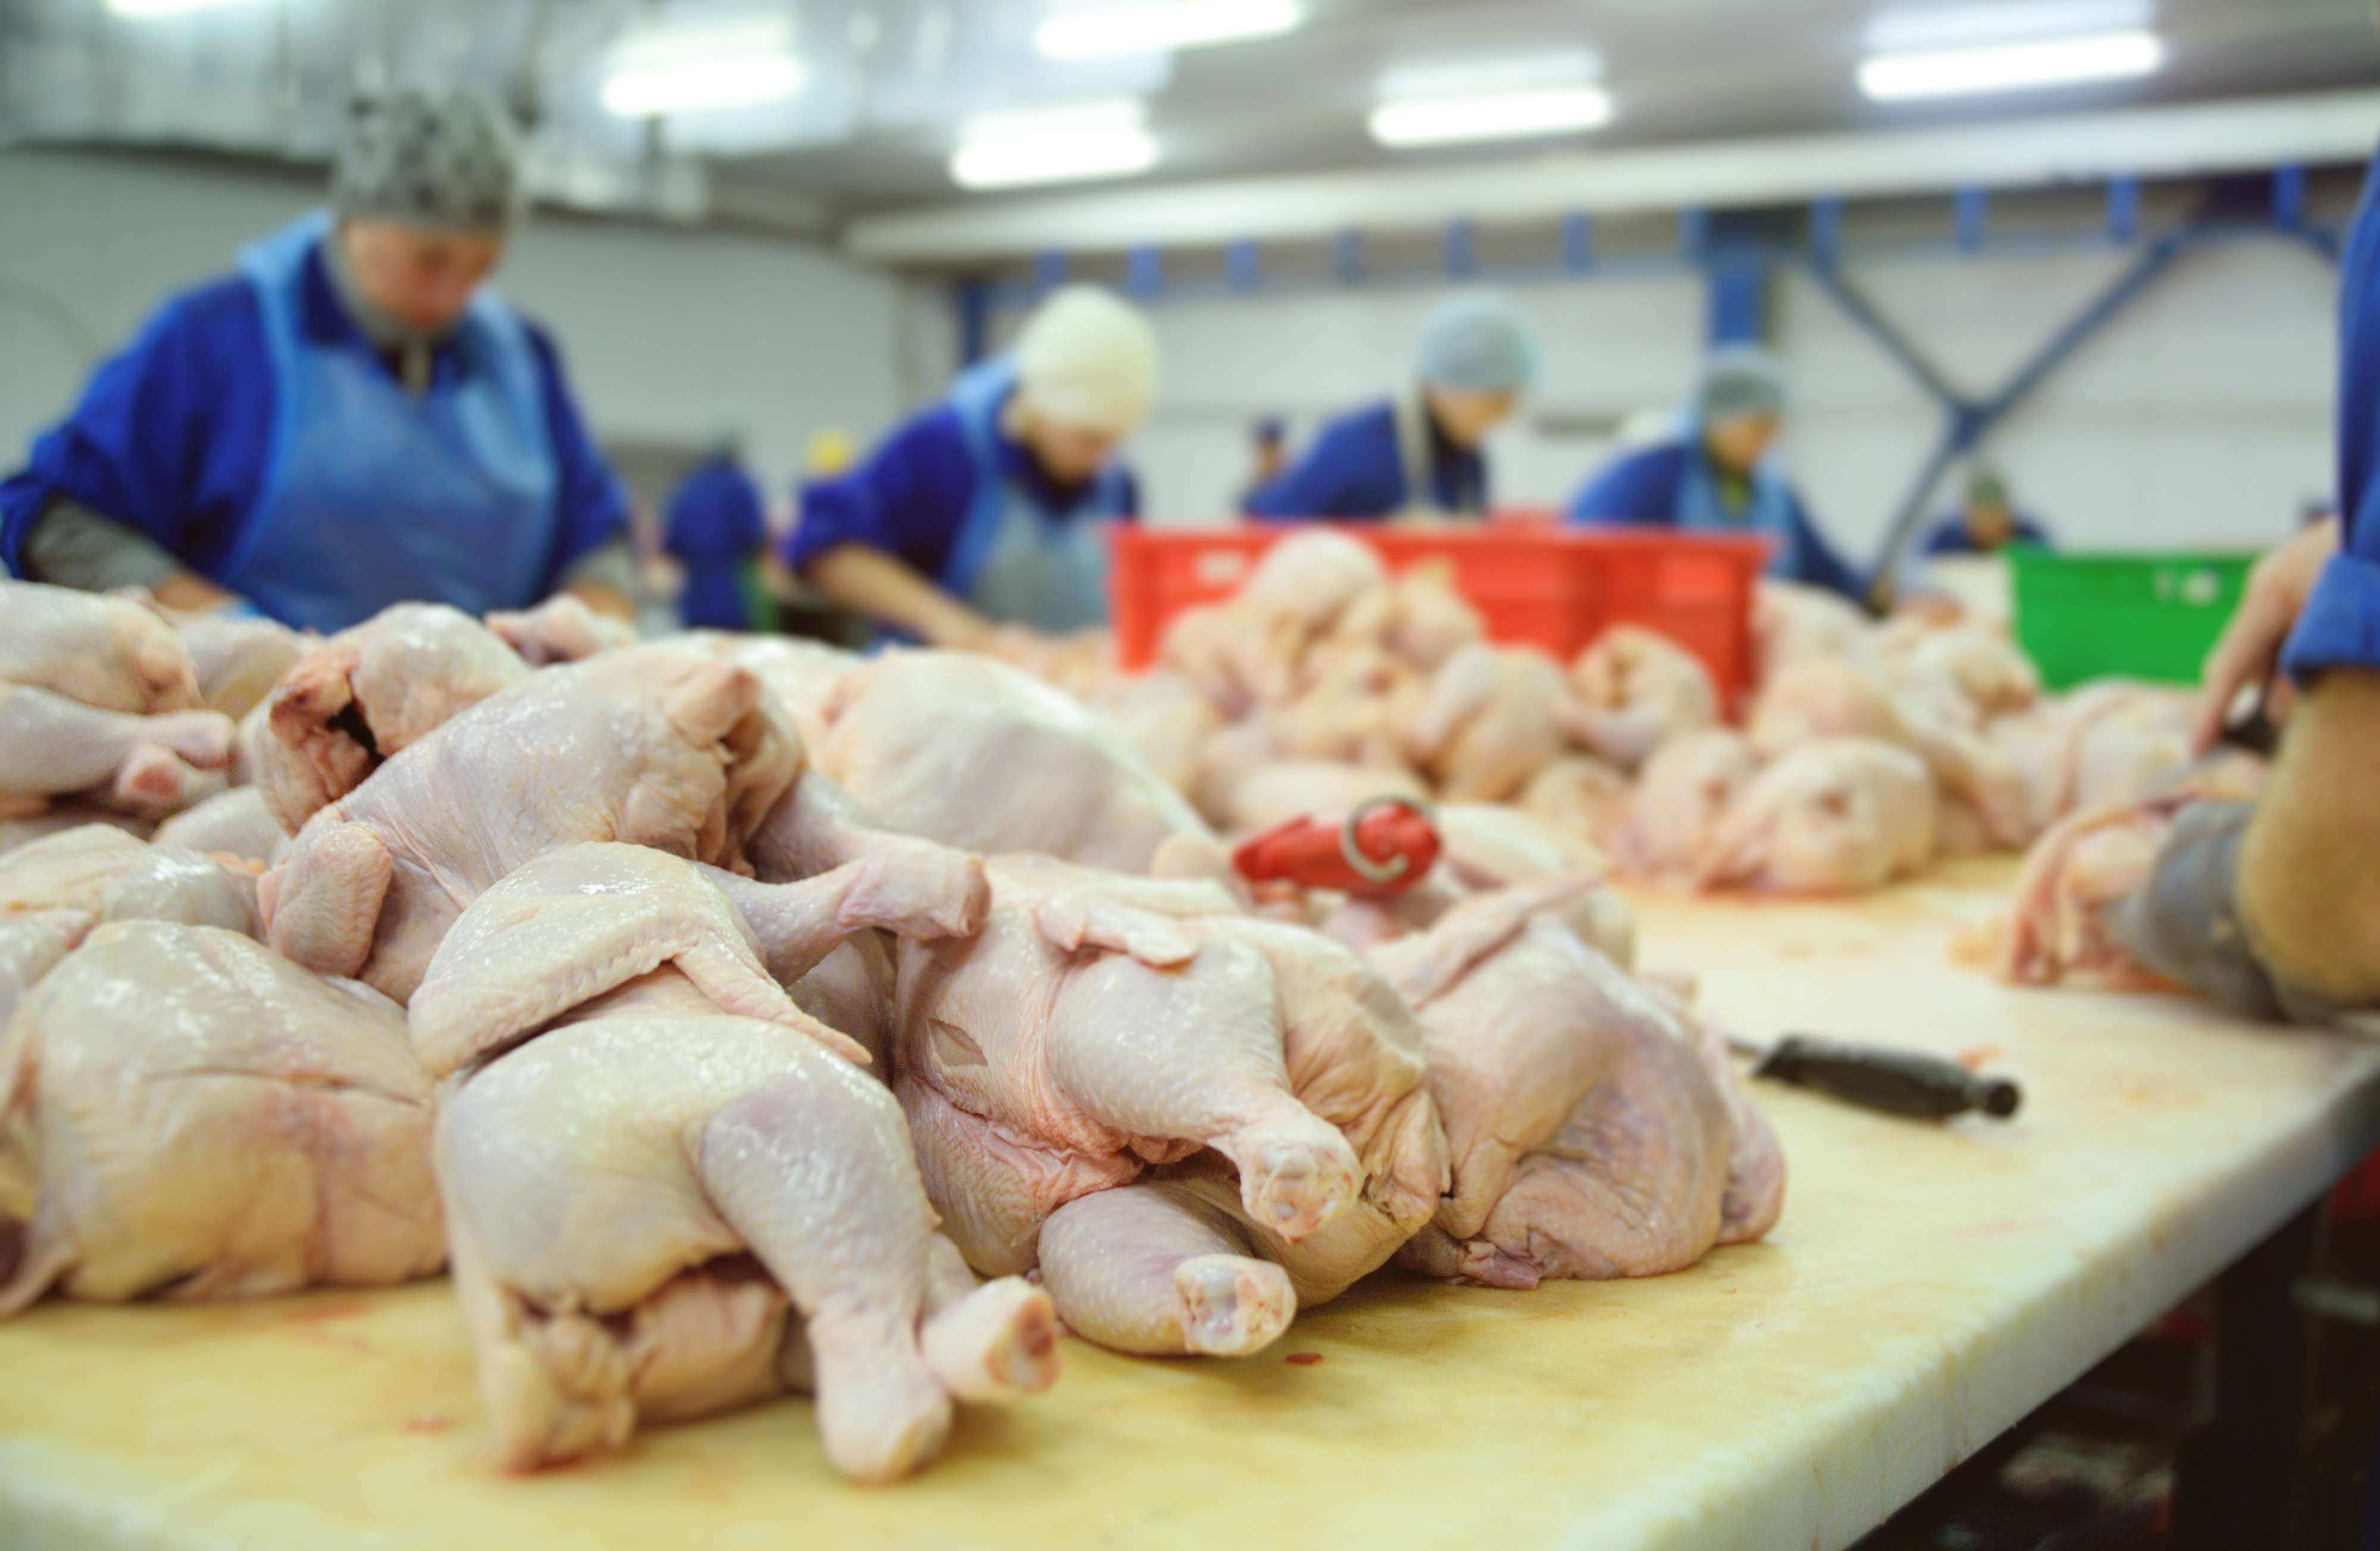 Brazil's BRF invests $54 million to modernize poultry operations in Paraná